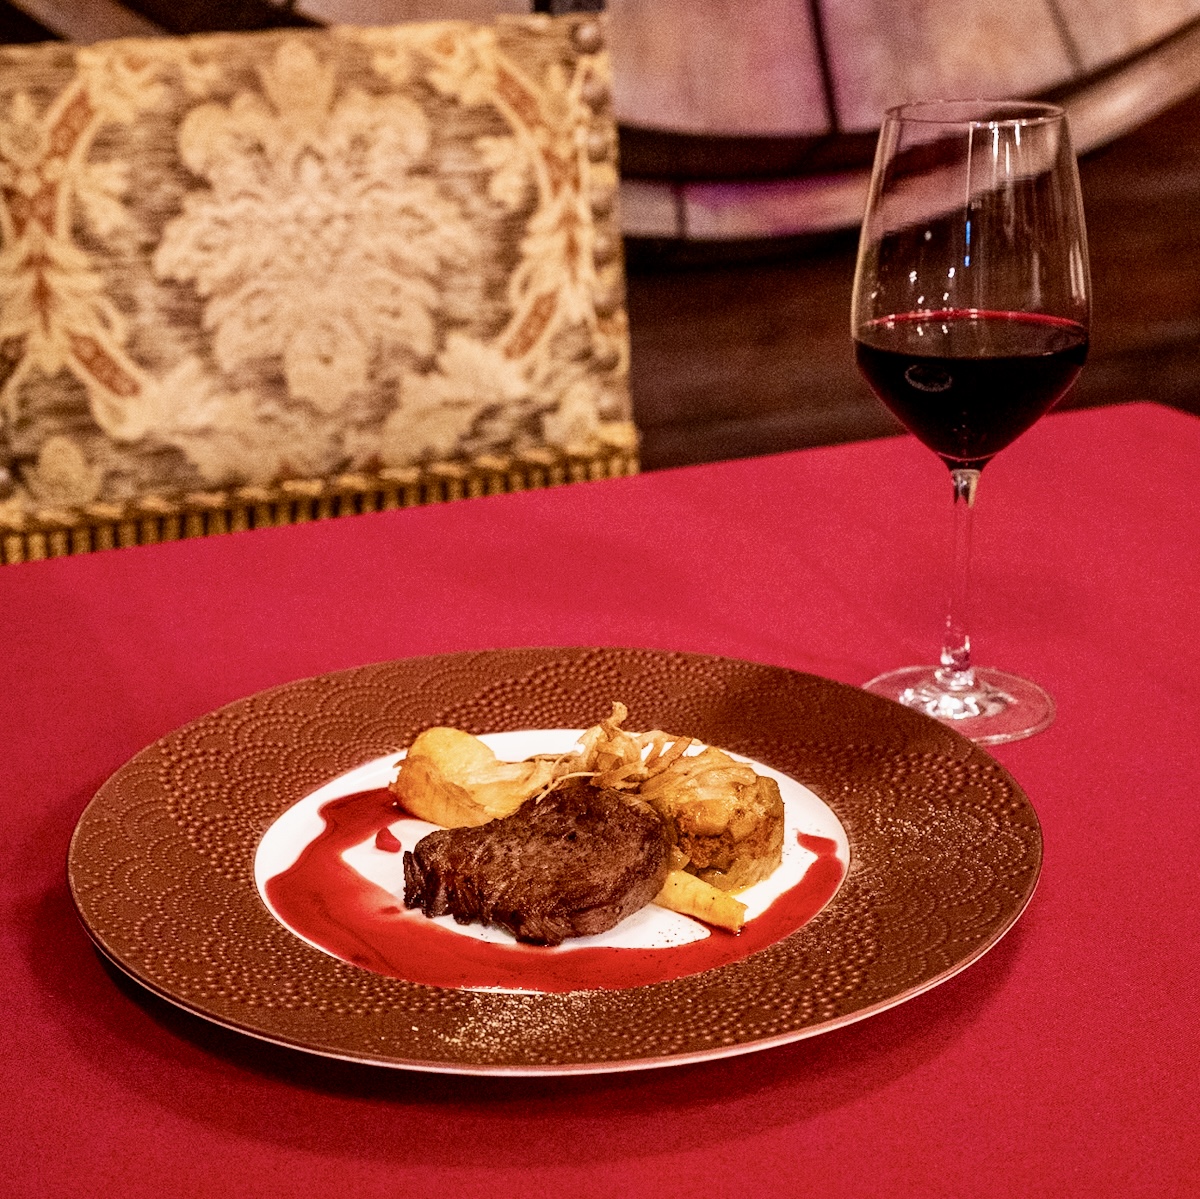 <赤ワイン>インペリアル レセルバ（クネ）
牛フィレ肉の繊細な味わいや、スパイスをふんだんに使用した上品な甘みを持つソースとの相性が抜群な、複雑で洗練されたスタイルのワイン